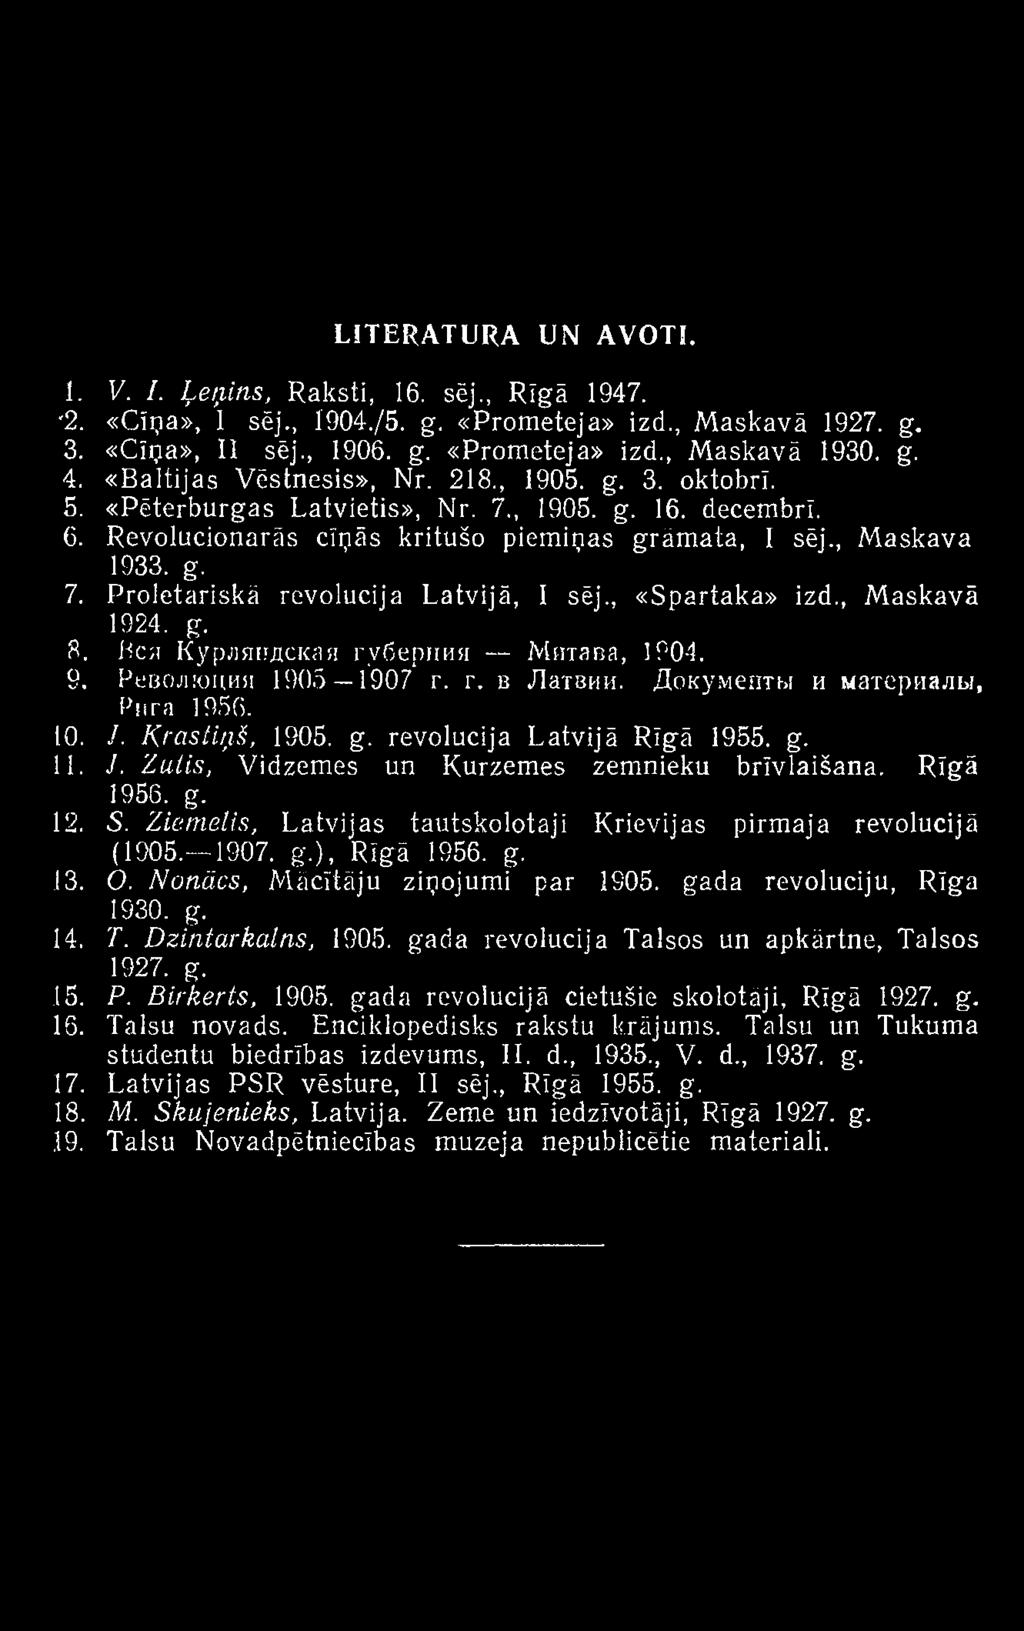 Nonācs, Mācītāju ziņojumi par 1905. gada revolūciju, Rīga 1930. g. 14. T. D zint ar kalns, 1905. gada revolūcija Talsos un apkārtne, Talsos 1927. g. 15. P. Birkerts, 1905.